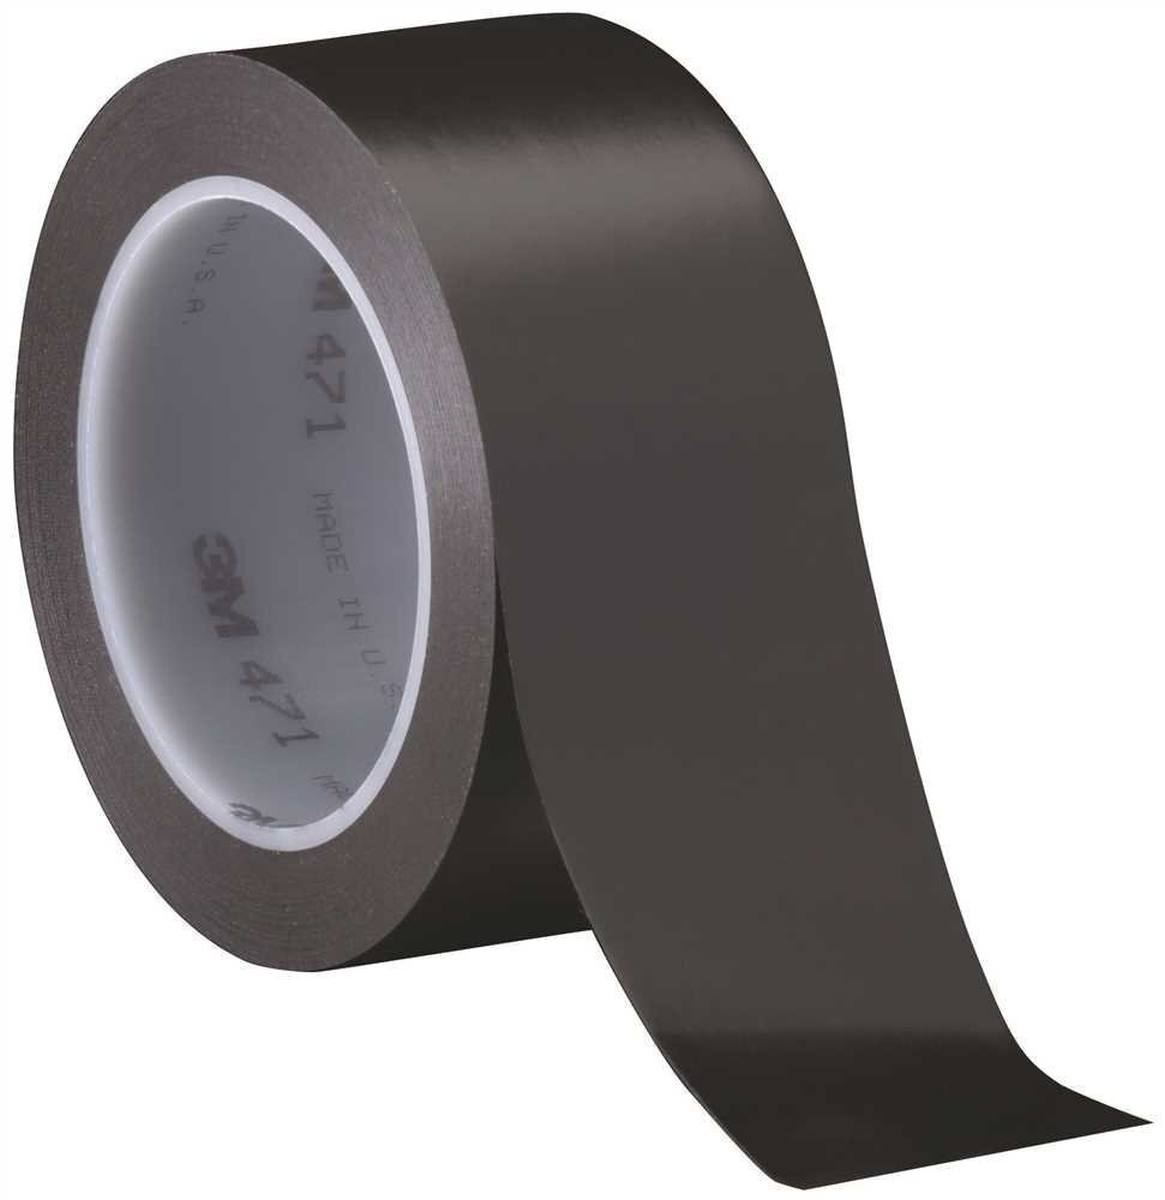 Nastro adesivo 3M in PVC morbido 471 F, nero, 25 mm x 33 m, 0,13 mm